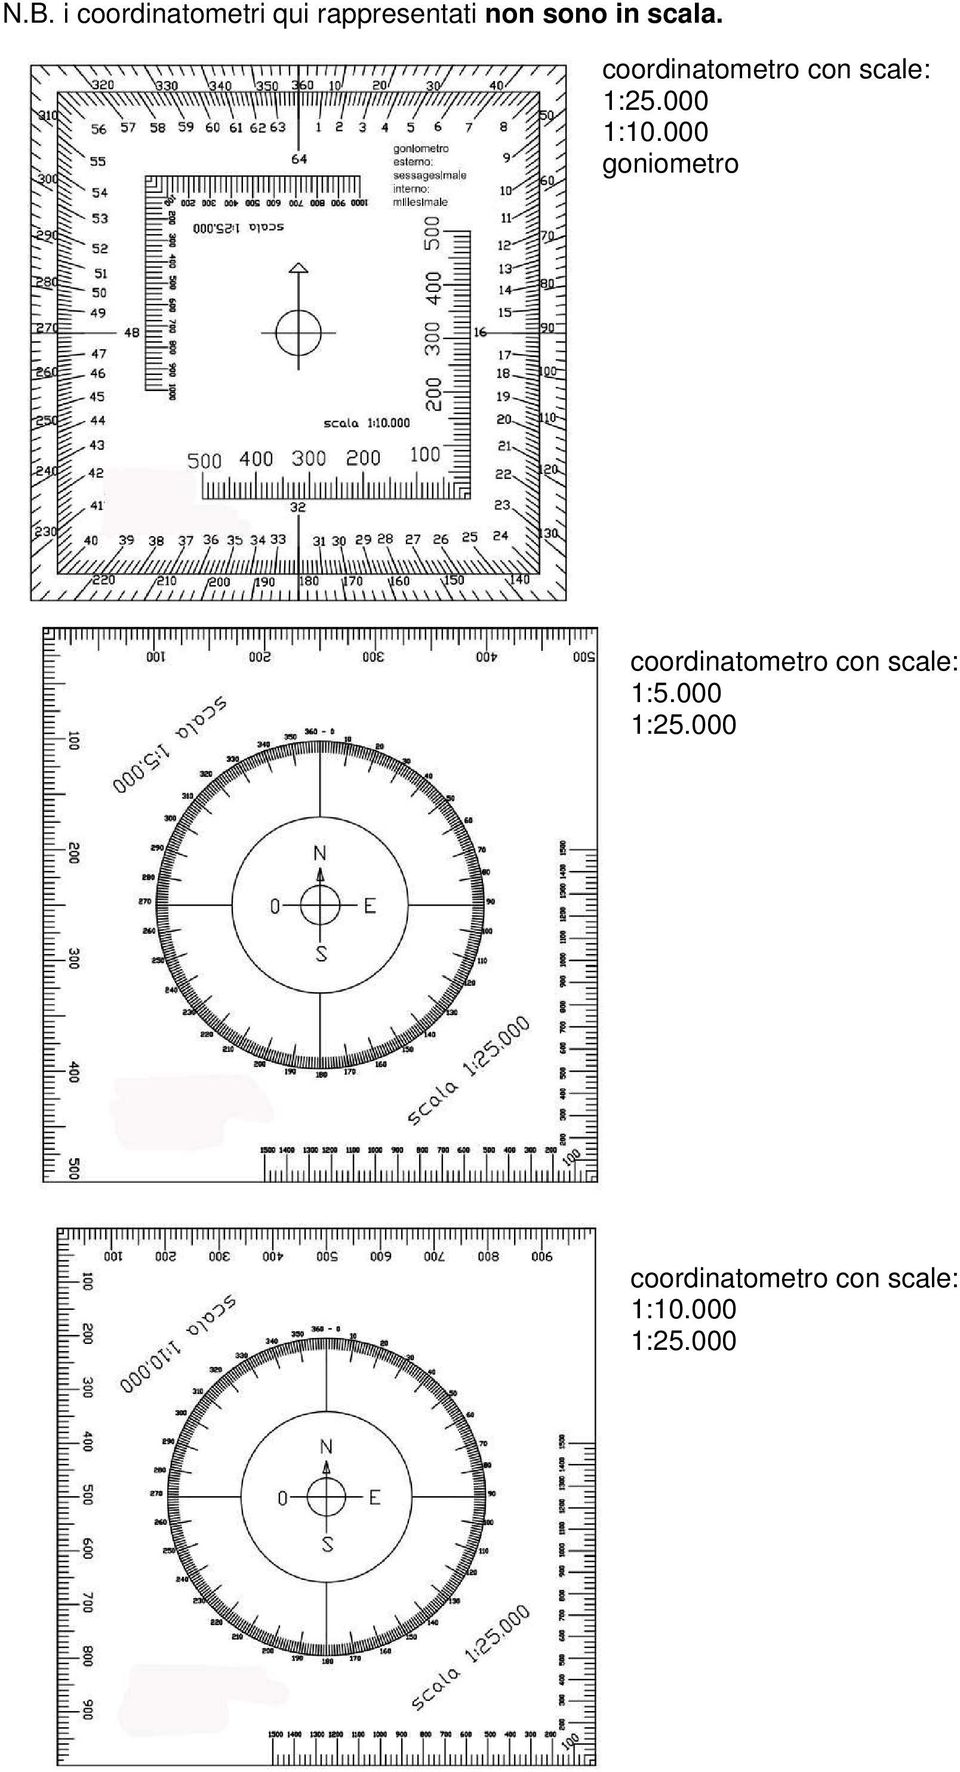 000 goniometro coordinatometro con scale: 1:5.